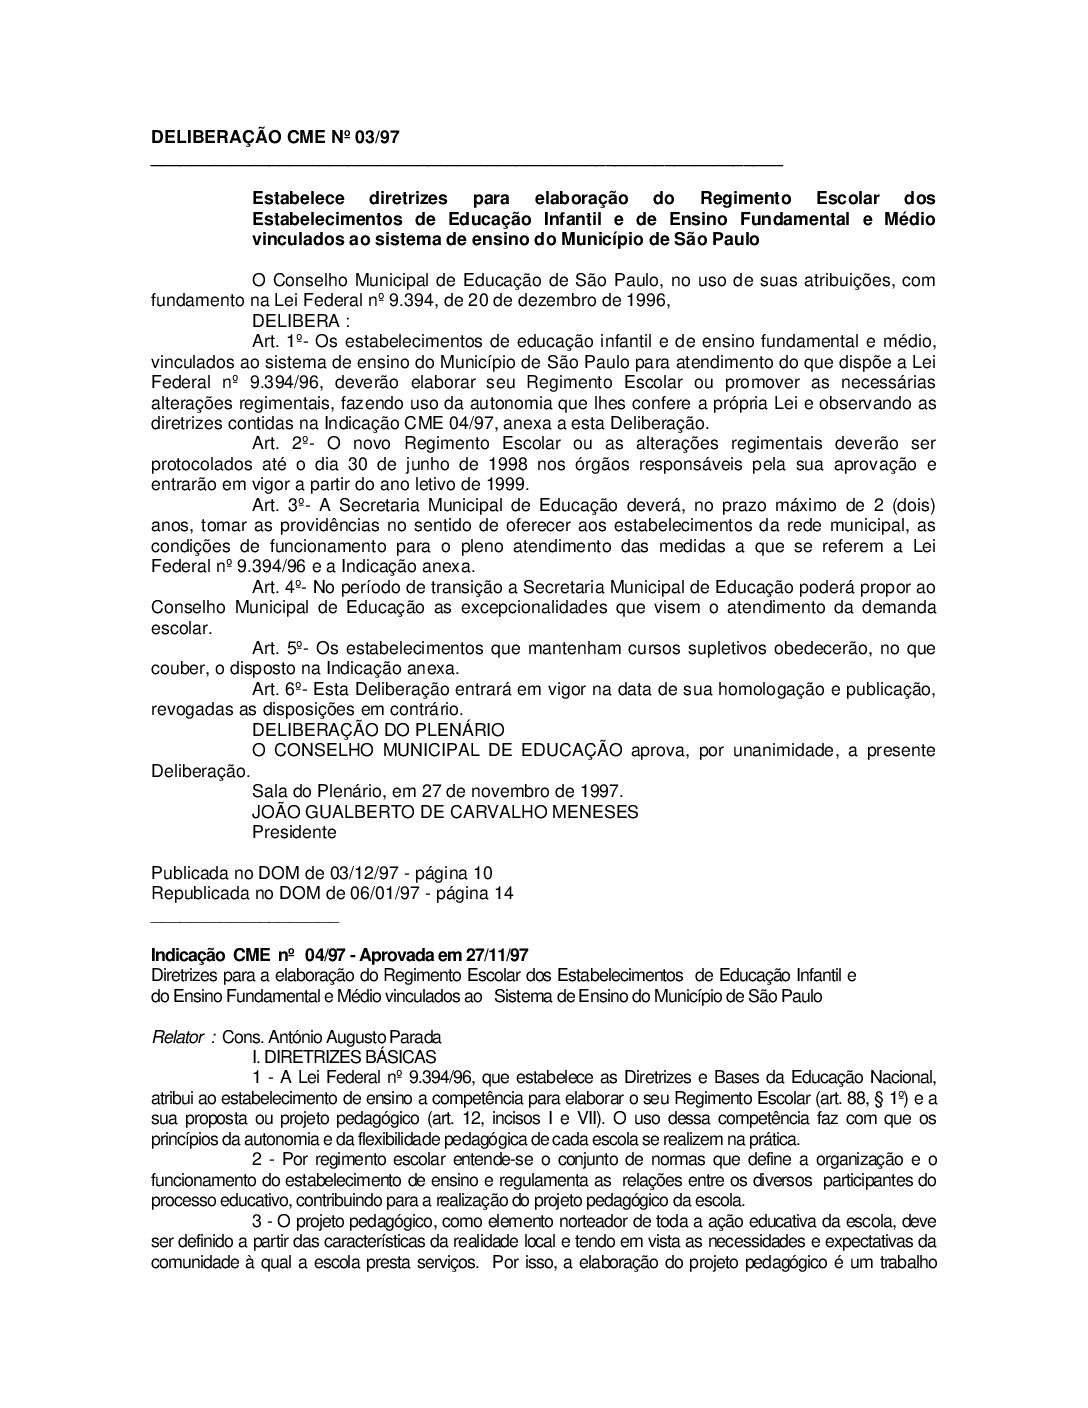 Deliberação CME nº 03/1997 - Estabelece diretrizes para elaboração do Regimento Escolar dos Estabelecimentos de Educação Infantil e de Ensino Fundamental e Médio vinculados ao sistema de ensino do Município de São Paulo 